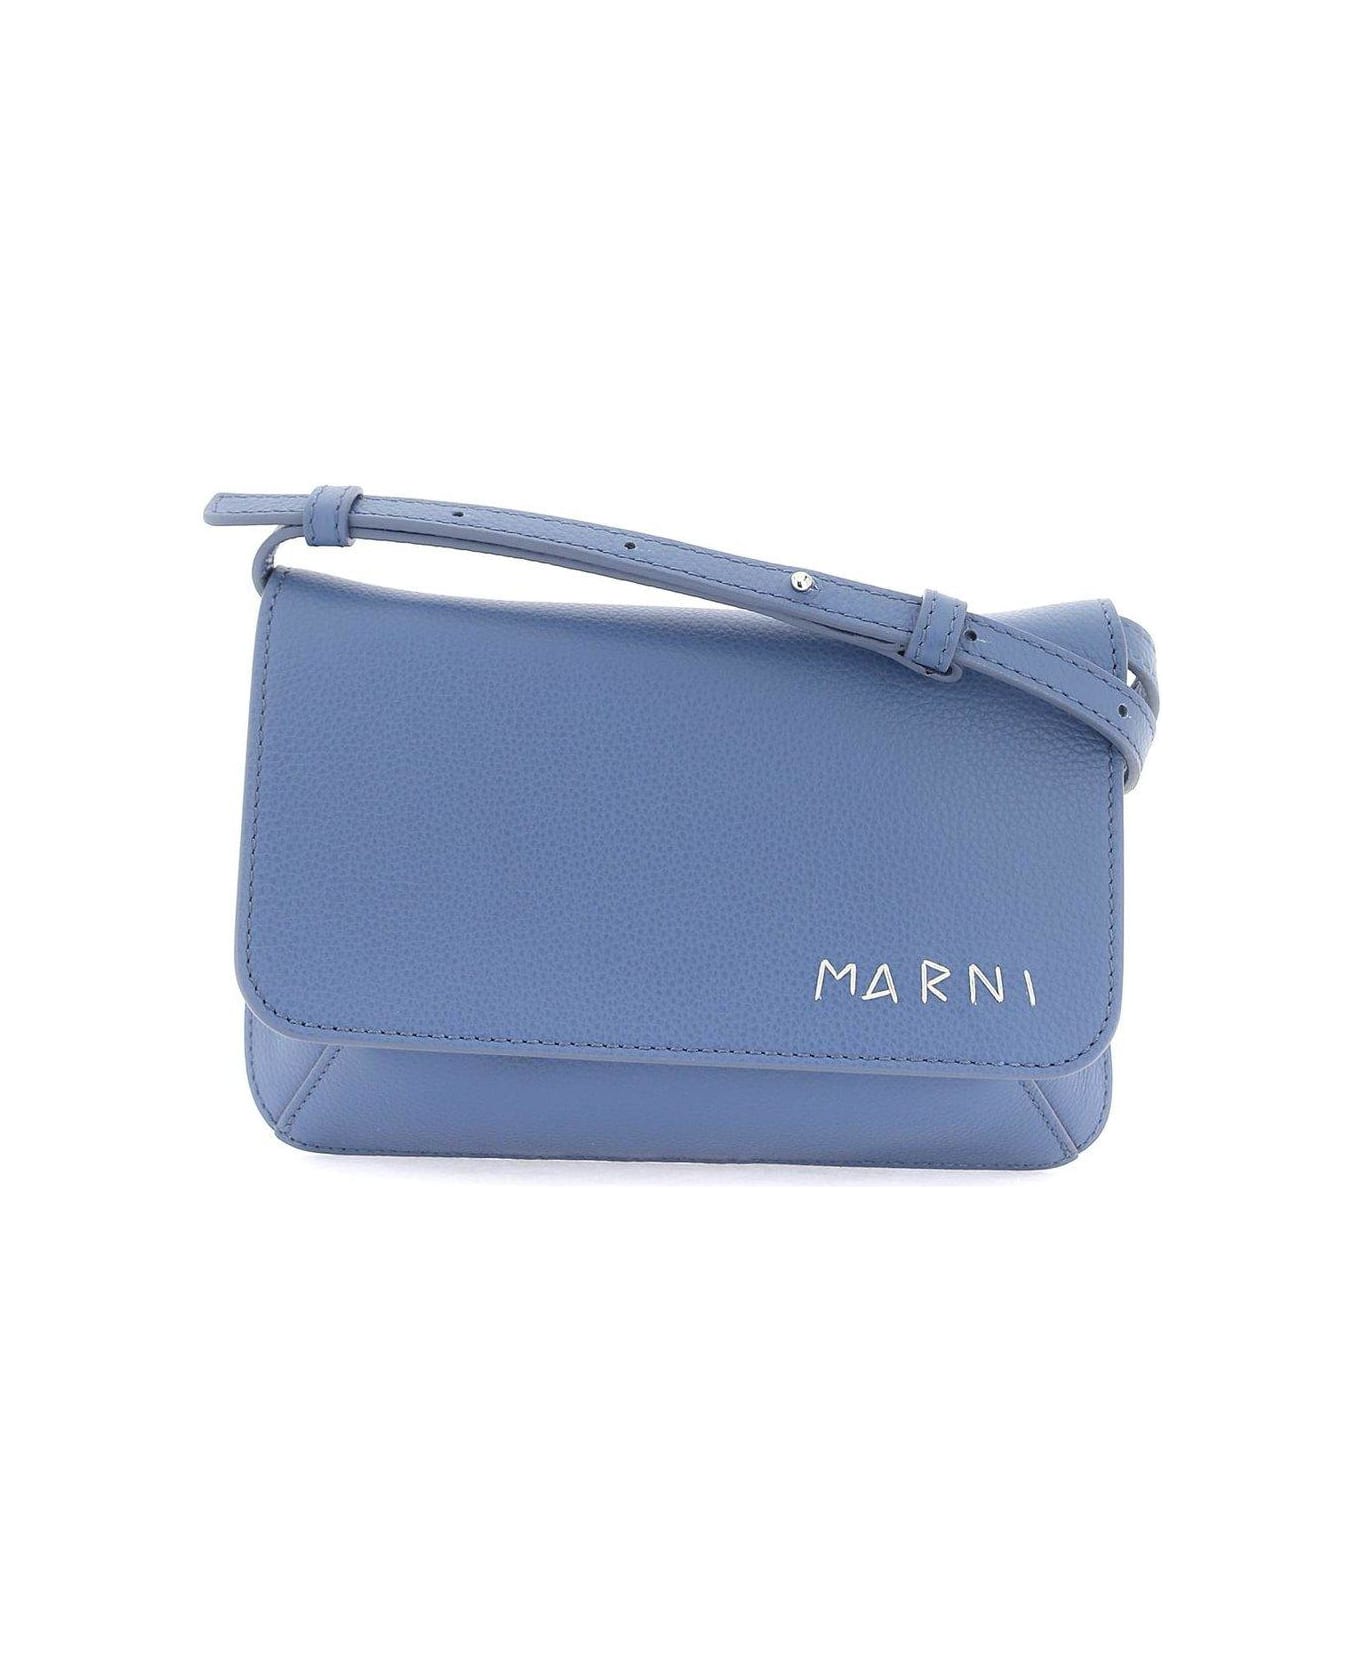 Marni Logo Embroidered Foldover Top Shoulder Bag - Gnawed Blue